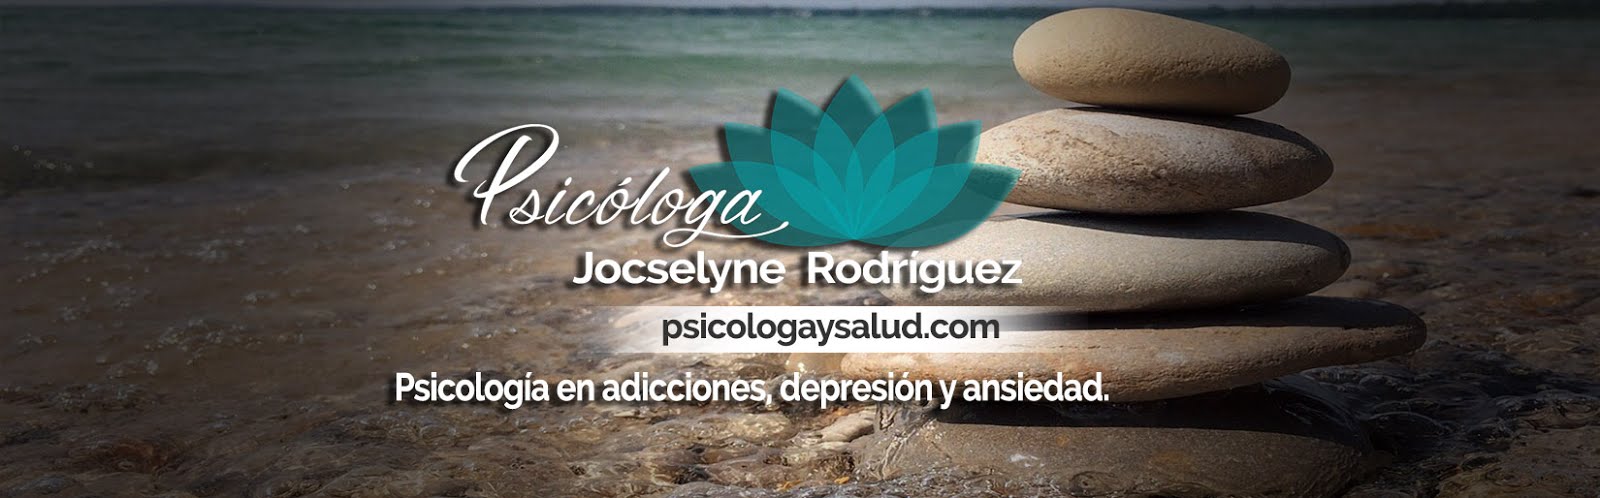 Psicóloga Jocselyne Rodríguez